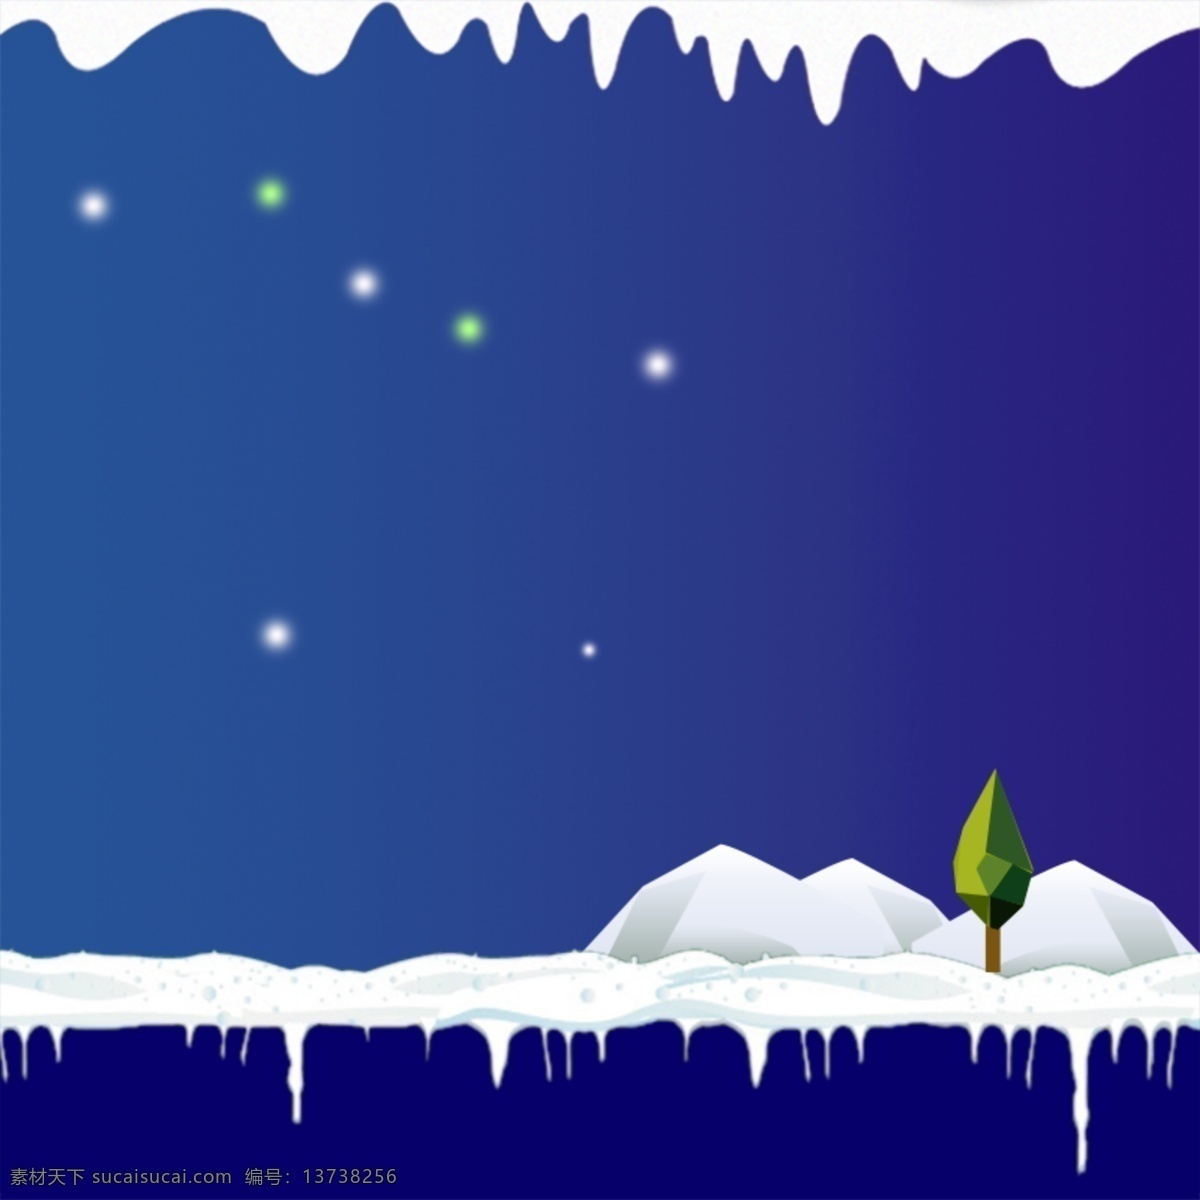 扁平冬季背景 冬季背景 冬季插画 冬天 广告设计模板 源文件 冬季 氛围 模板下载 冬季氛围 写意背景 蓝色